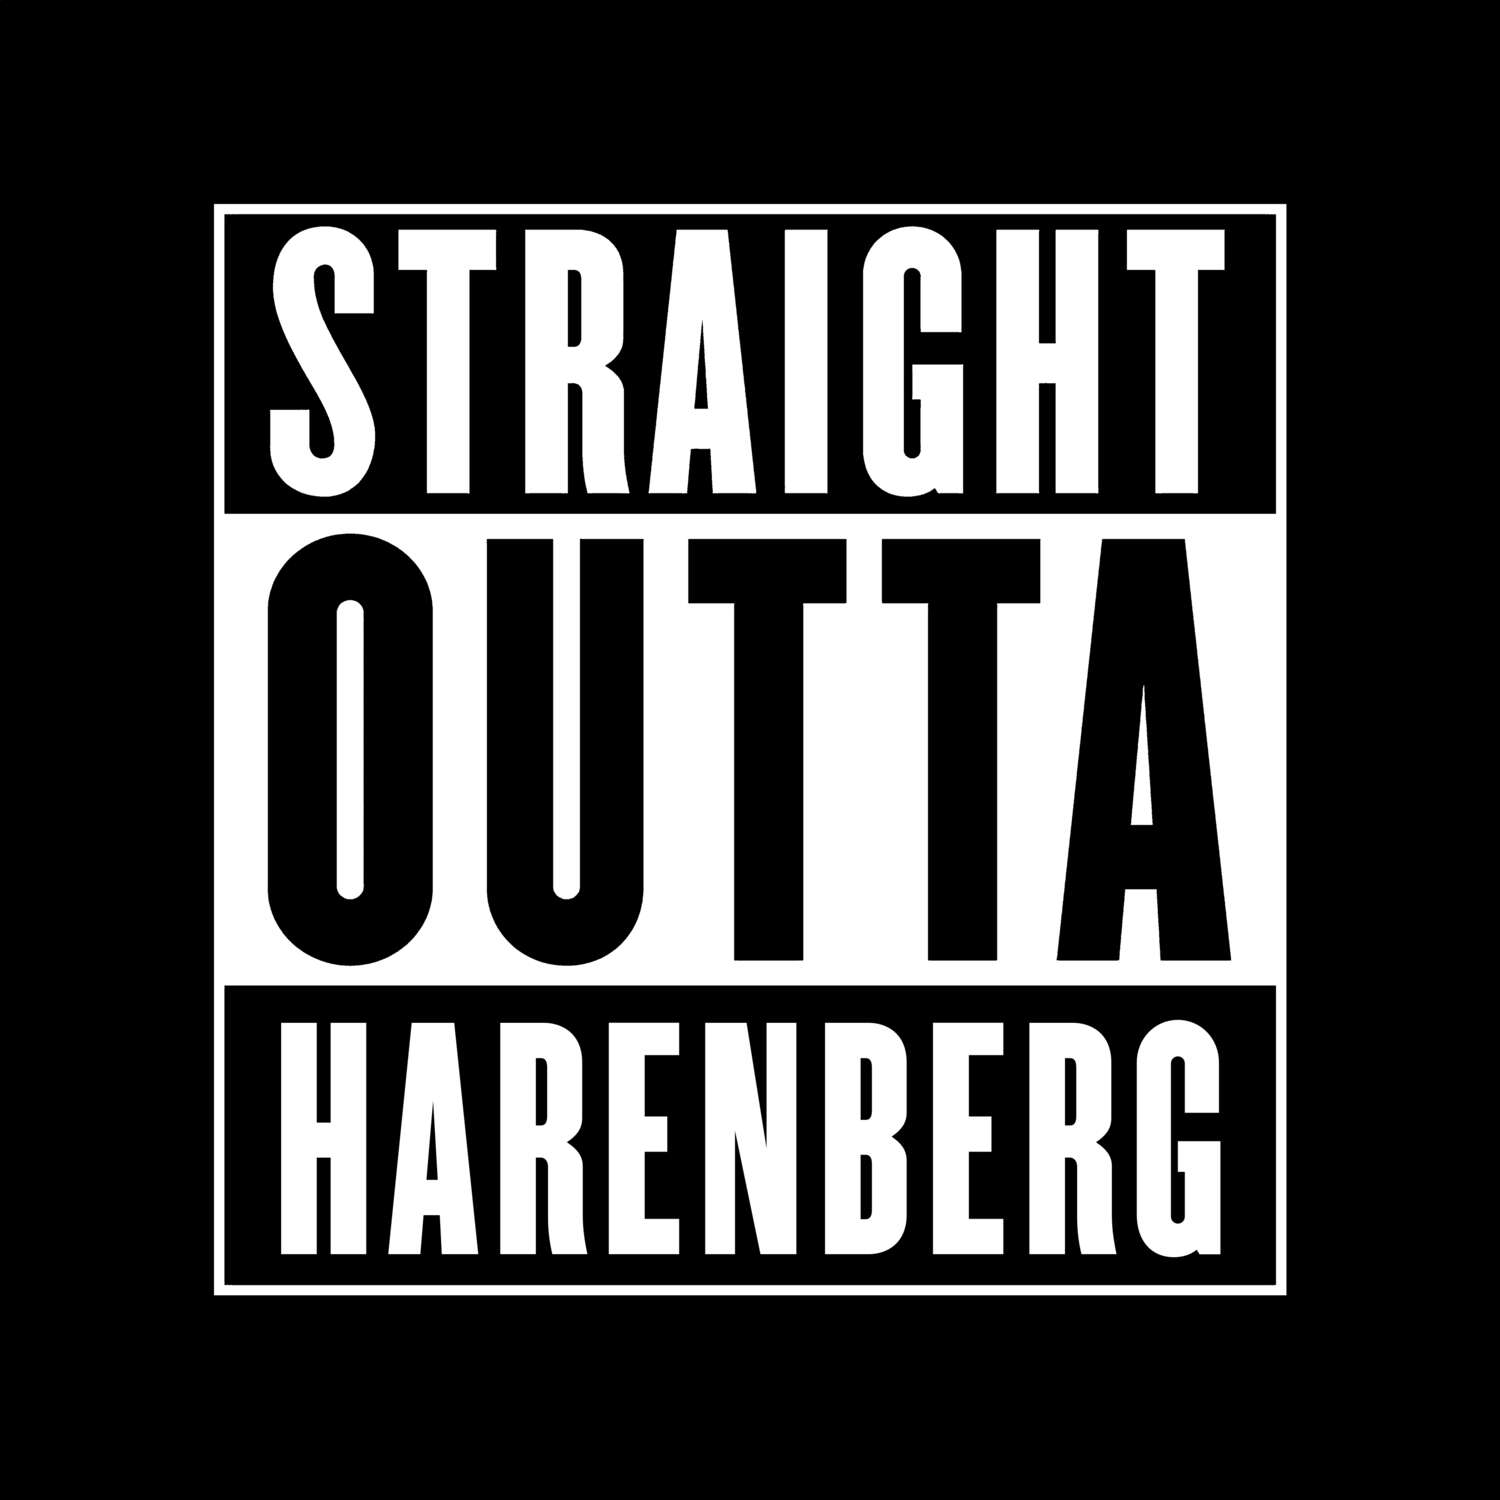 Harenberg T-Shirt »Straight Outta«